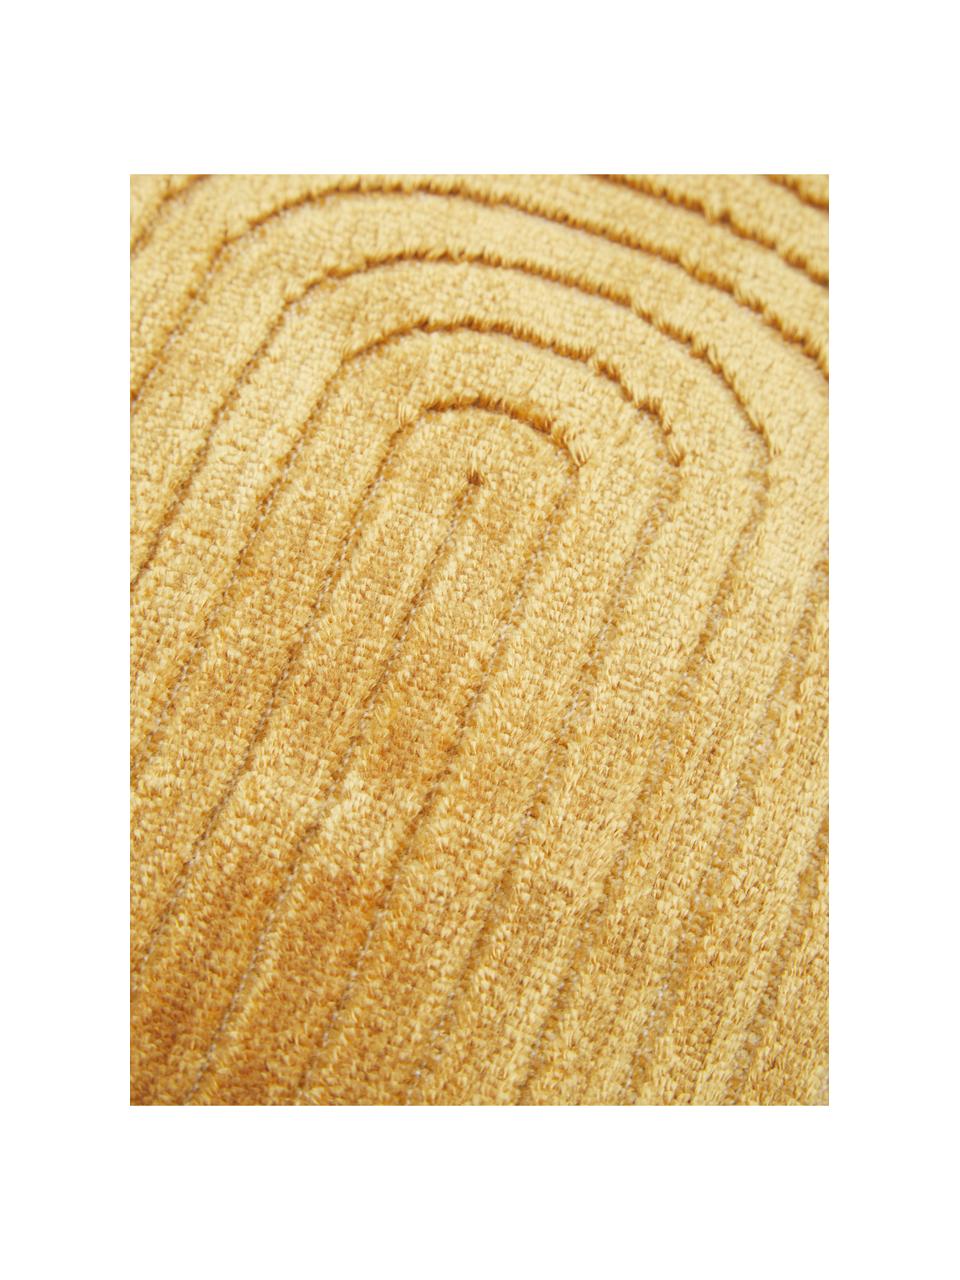 Fluwelen kussenhoes Carraway met structuurpatroon, Mosterdgeel, 30 x 50 cm